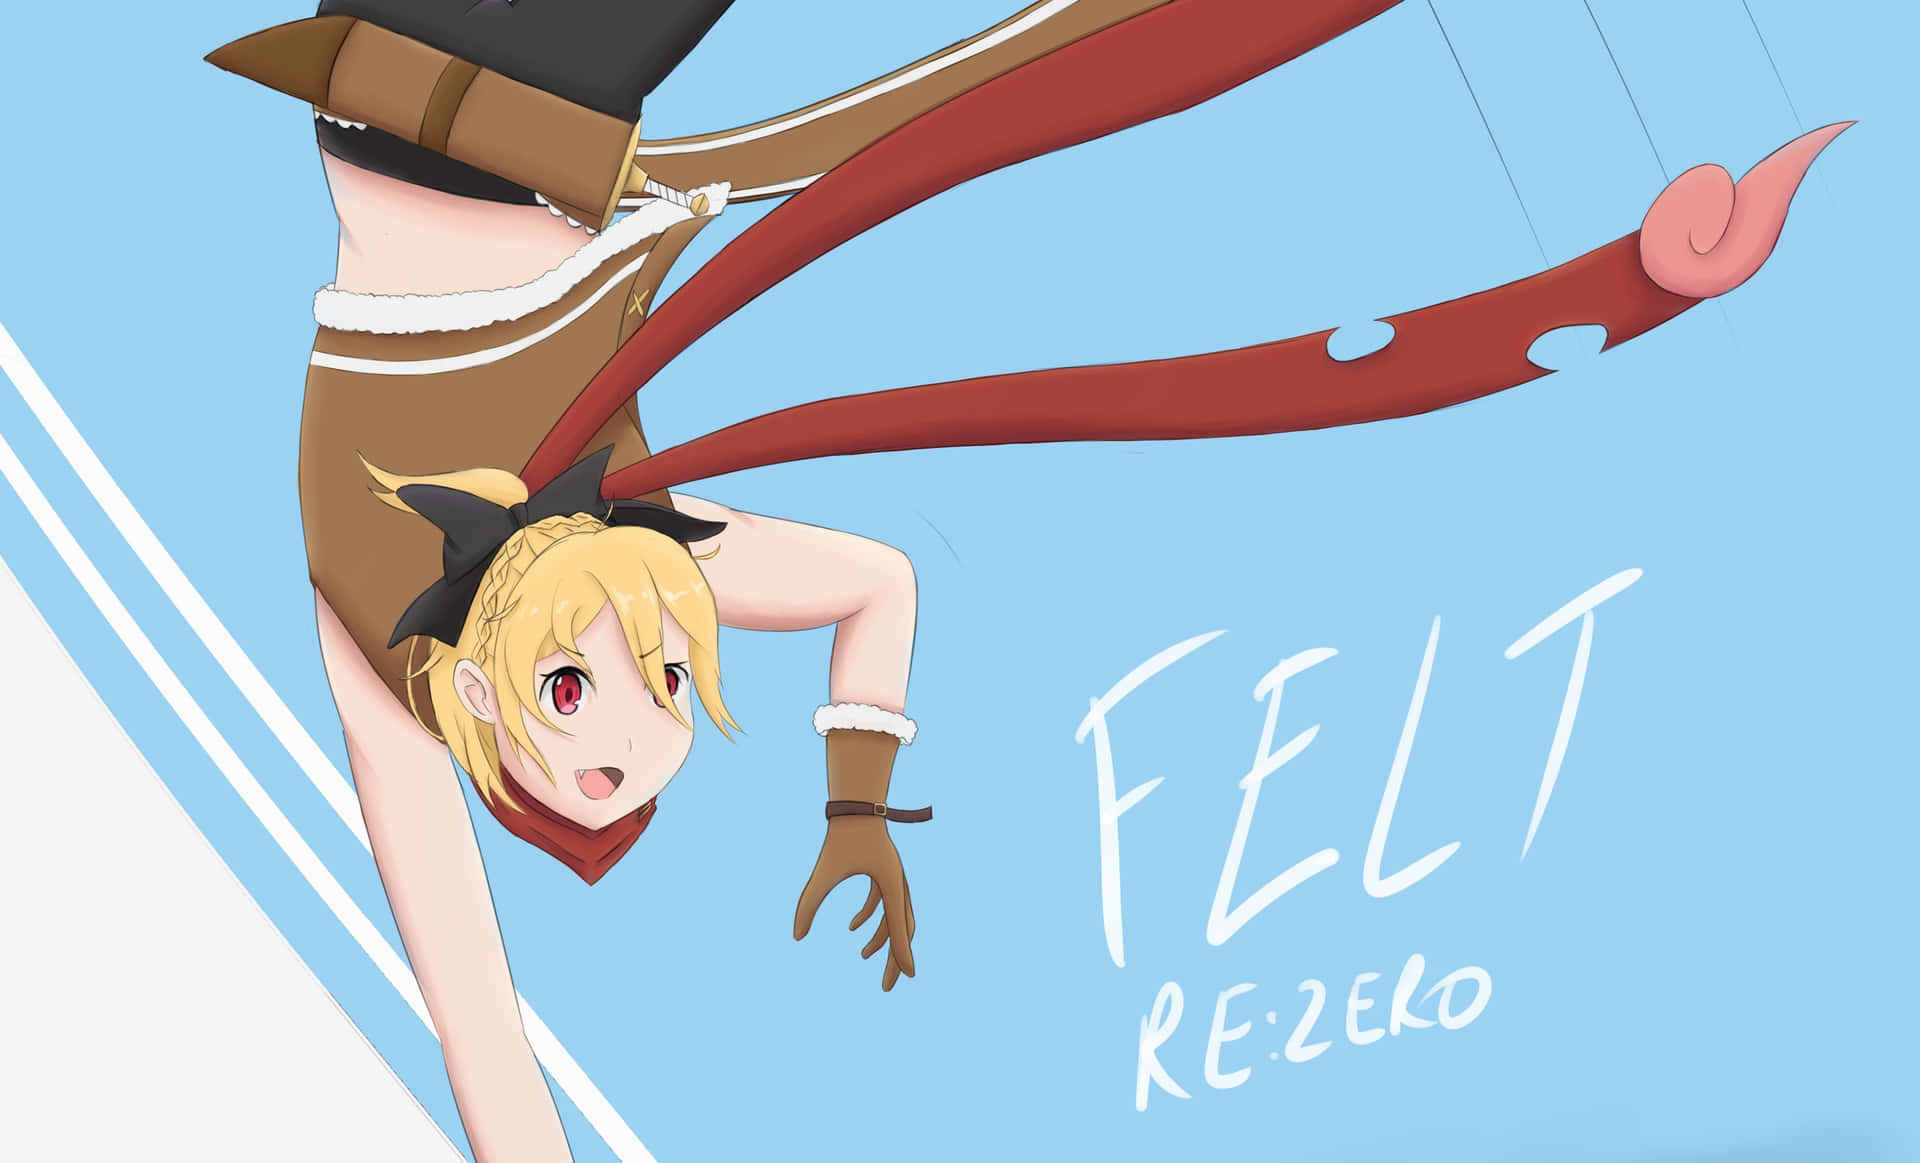 Fascinantefondo De Pantalla De Re:zero Anime. Fondo de pantalla